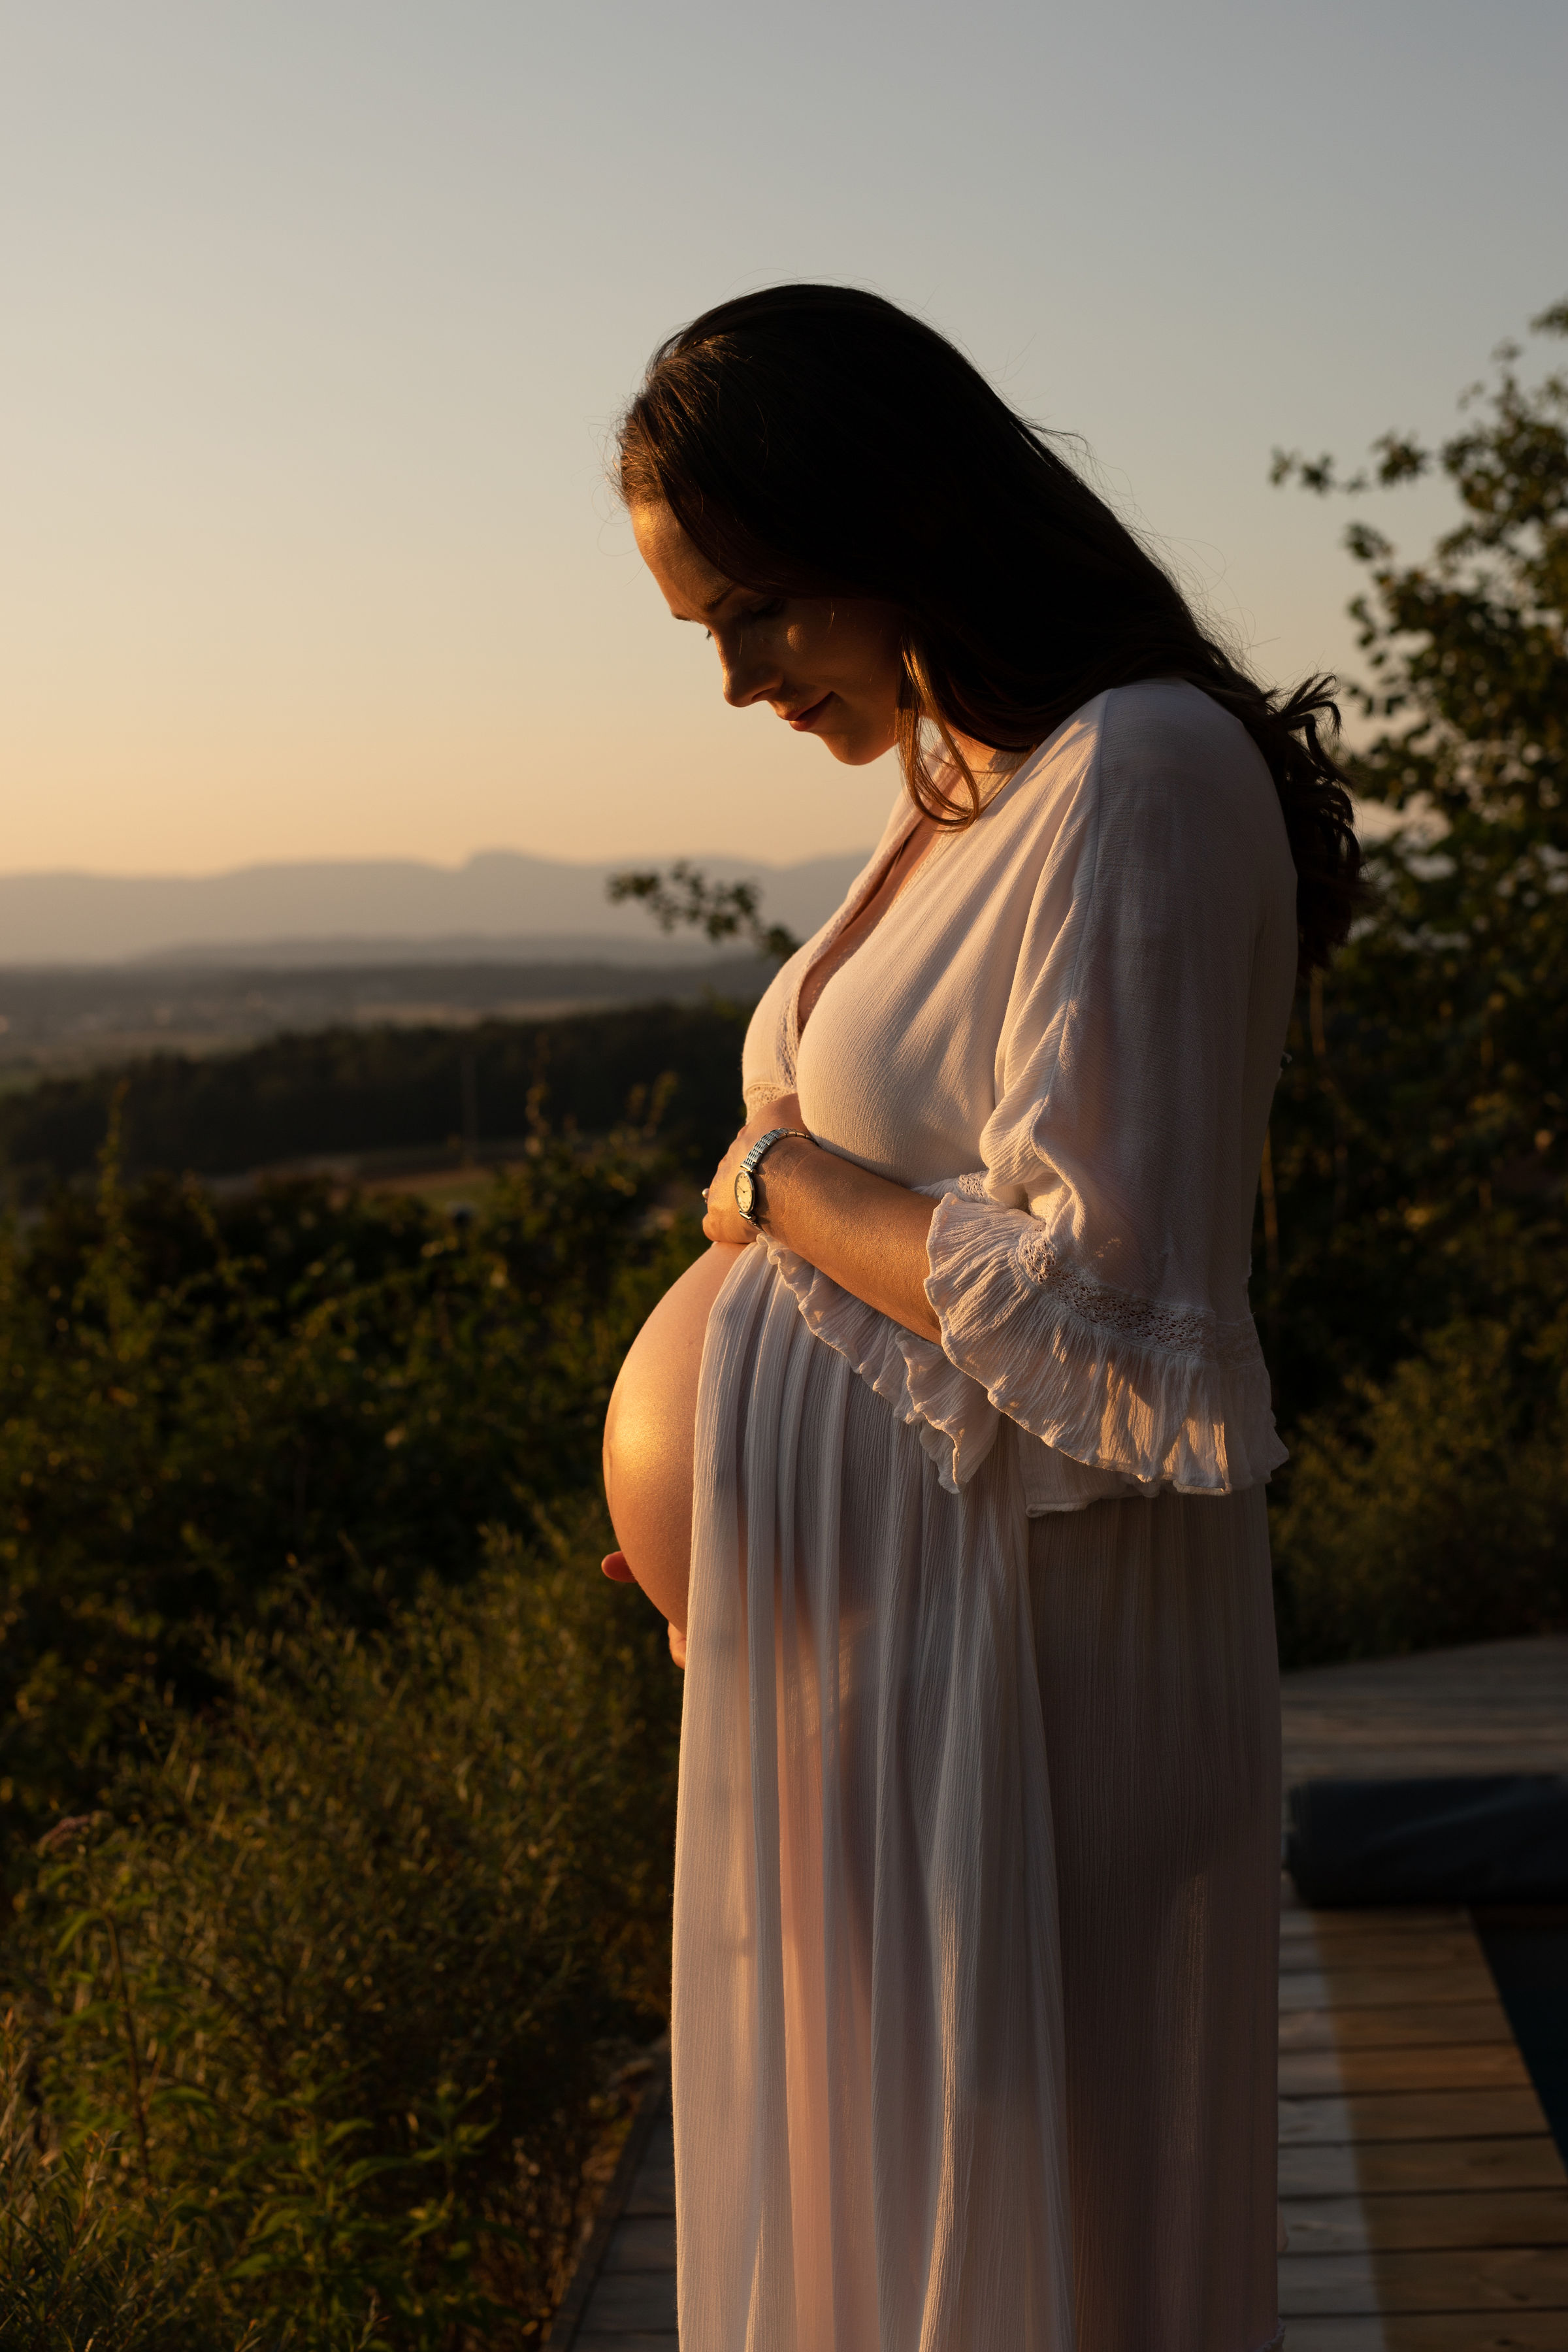 Schwangerschaftsdiabetes - mein Erfahrungsbericht